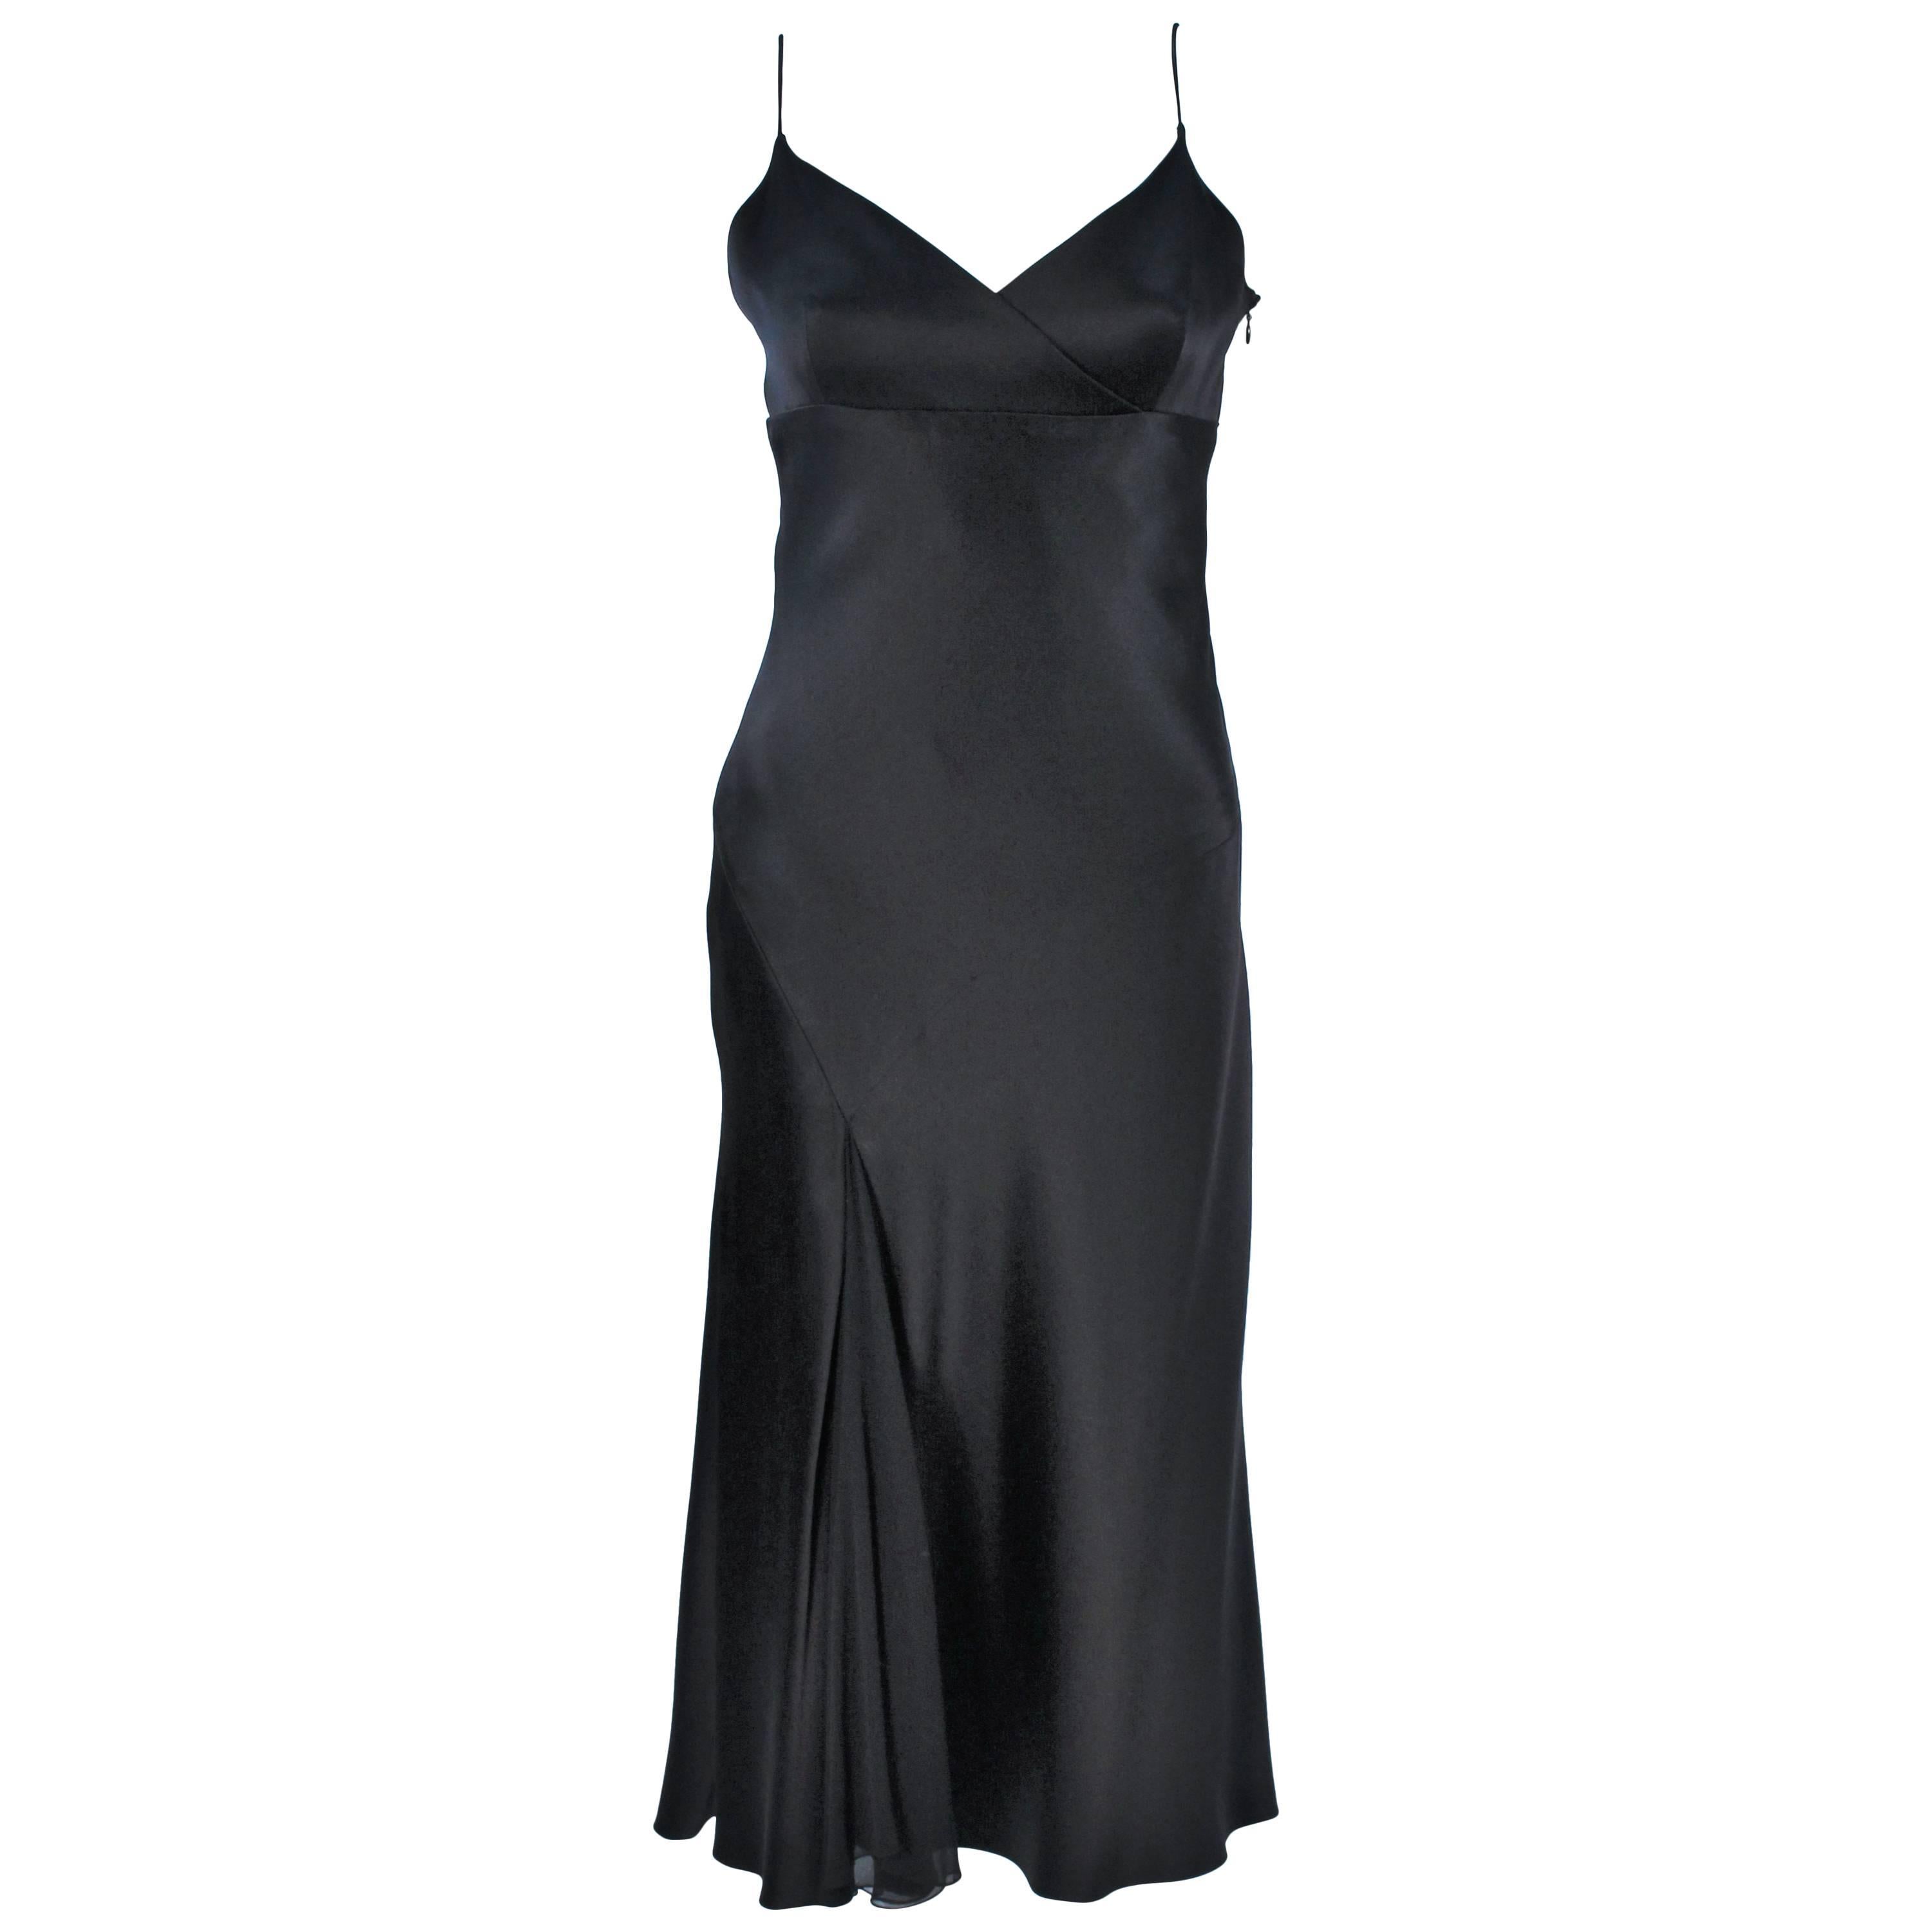 MONIQUE LHUILLER Black Silk Bias Cut Dress Size 12 For Sale